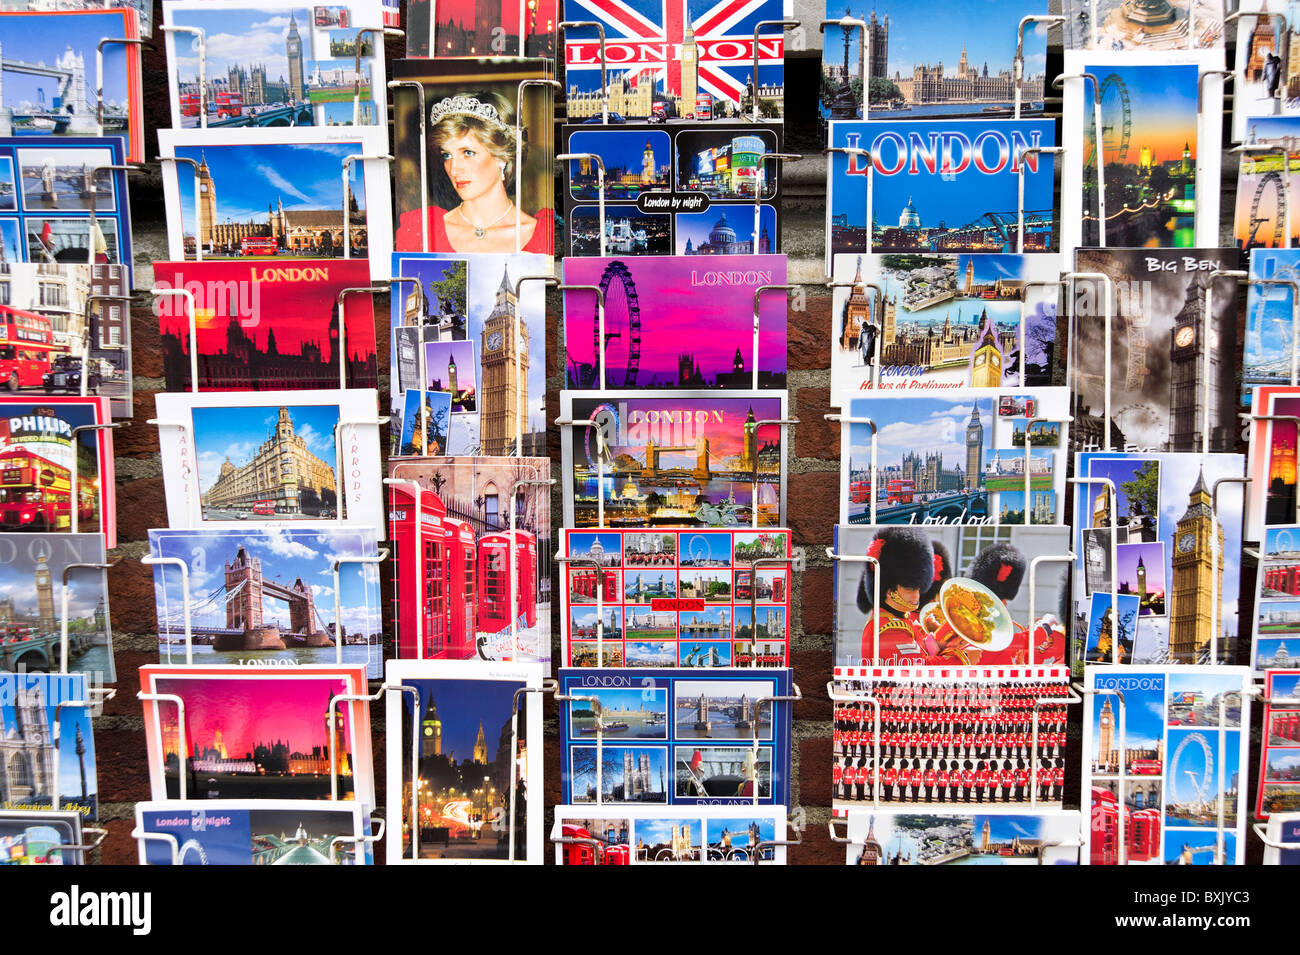 Cartoline di famosi siti di interesse turistico in London, England, Regno Unito Foto Stock